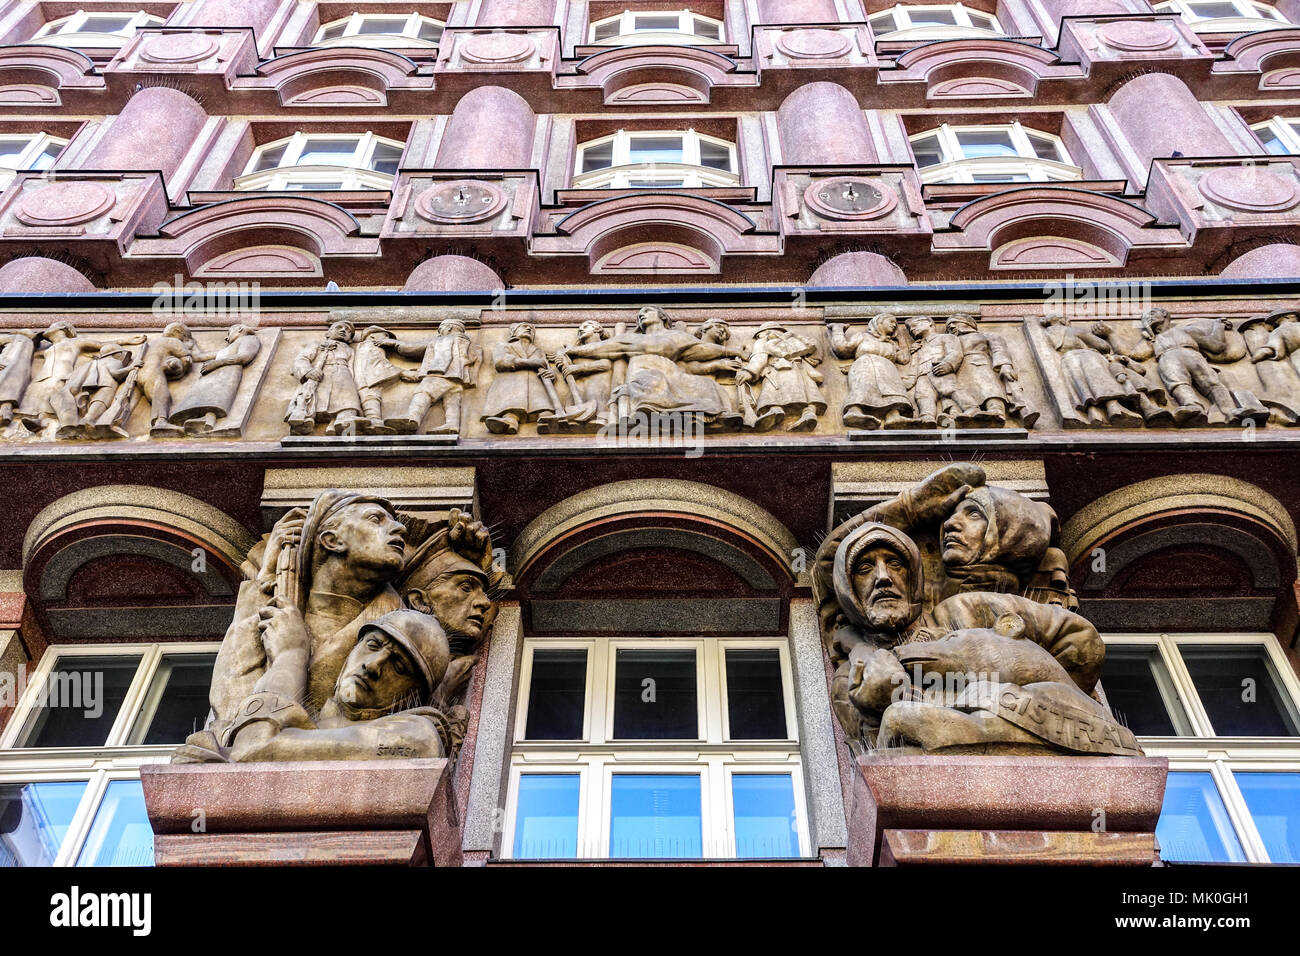 In Legiobanka rondocubist Stil, Na Porici, kubistische Architektur in Prag, Tschechische Republik Stockfoto